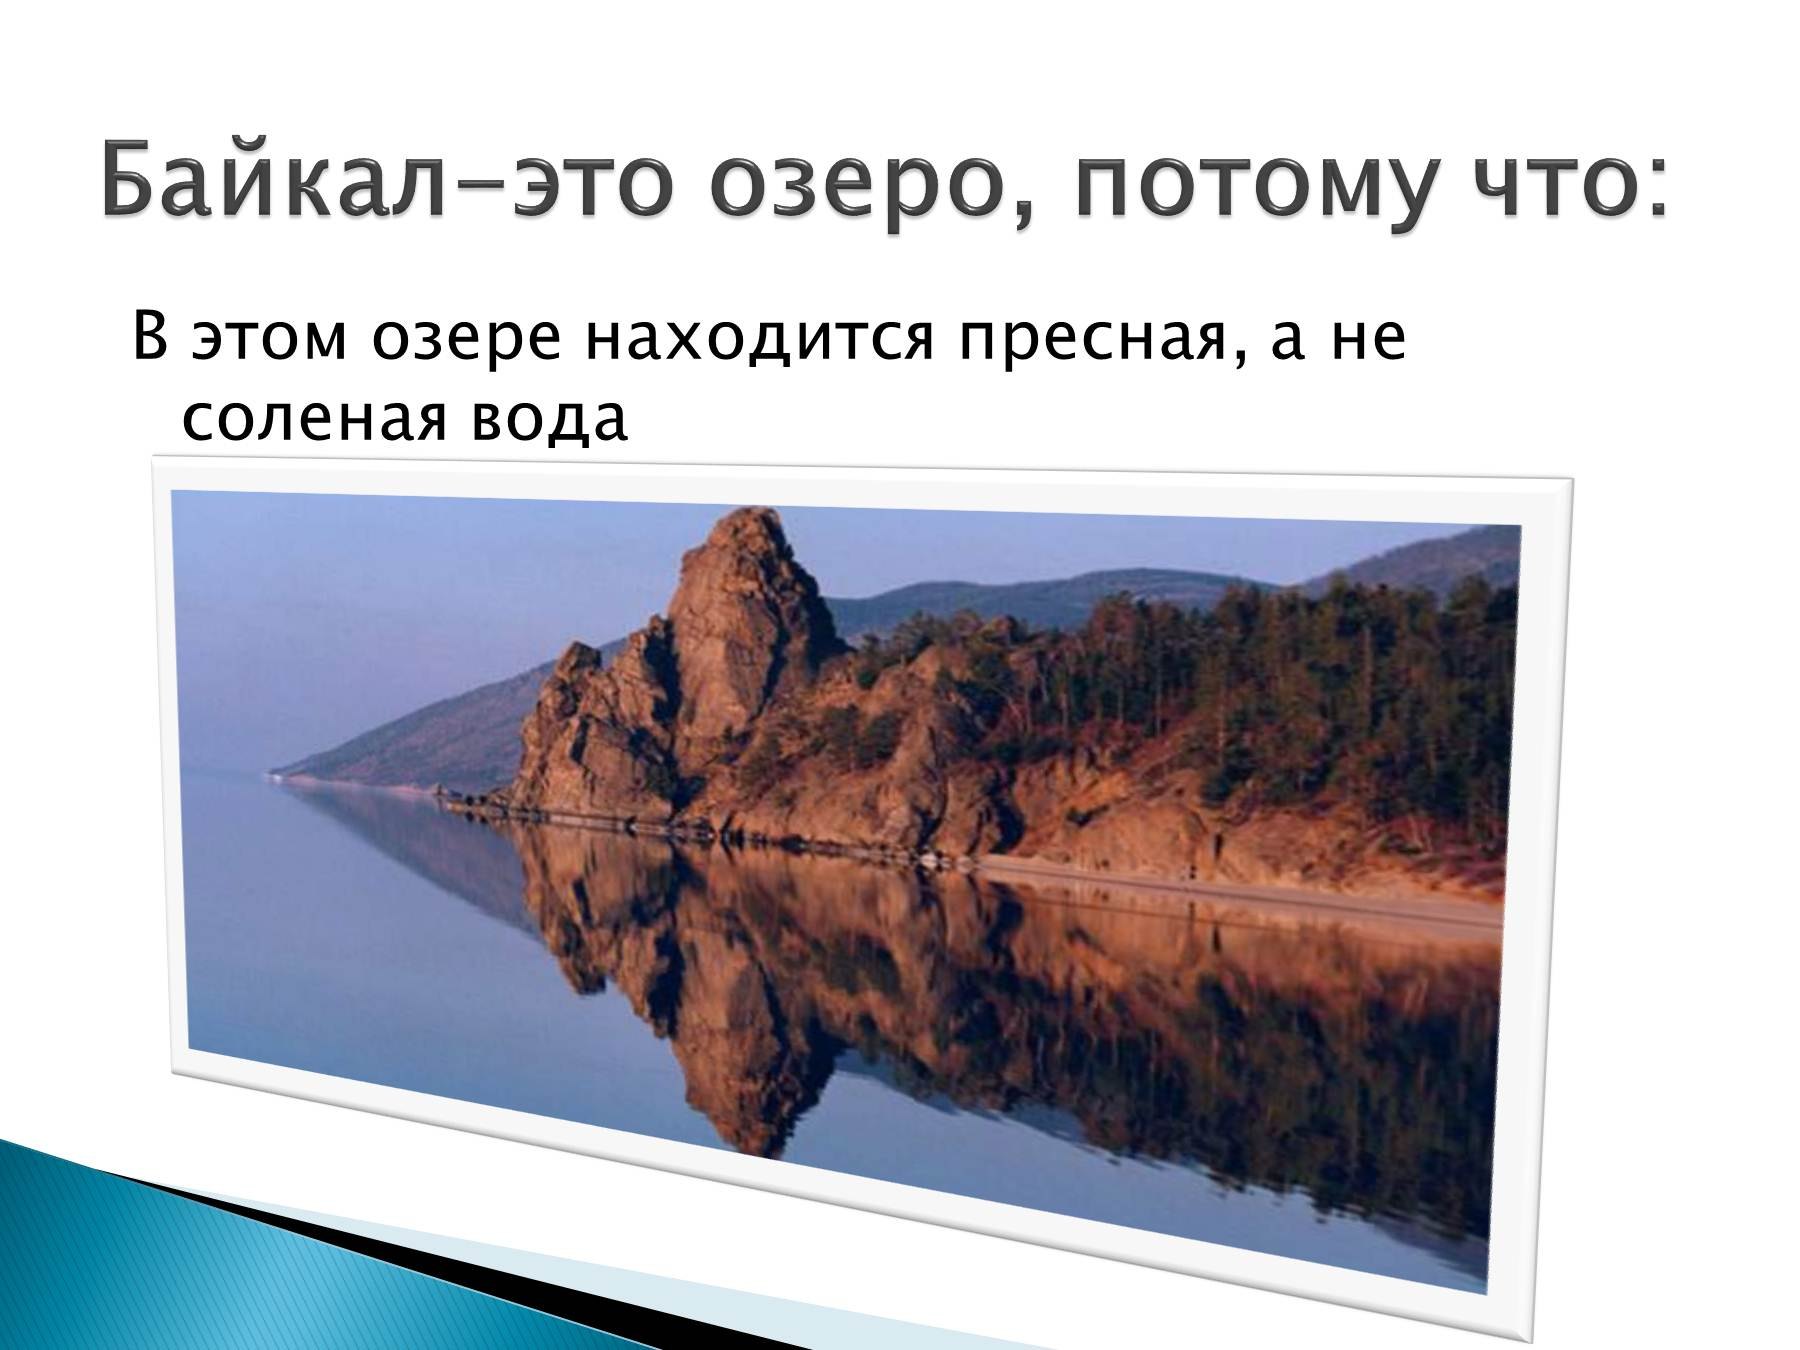 Озеро Байкал соленое или пресное